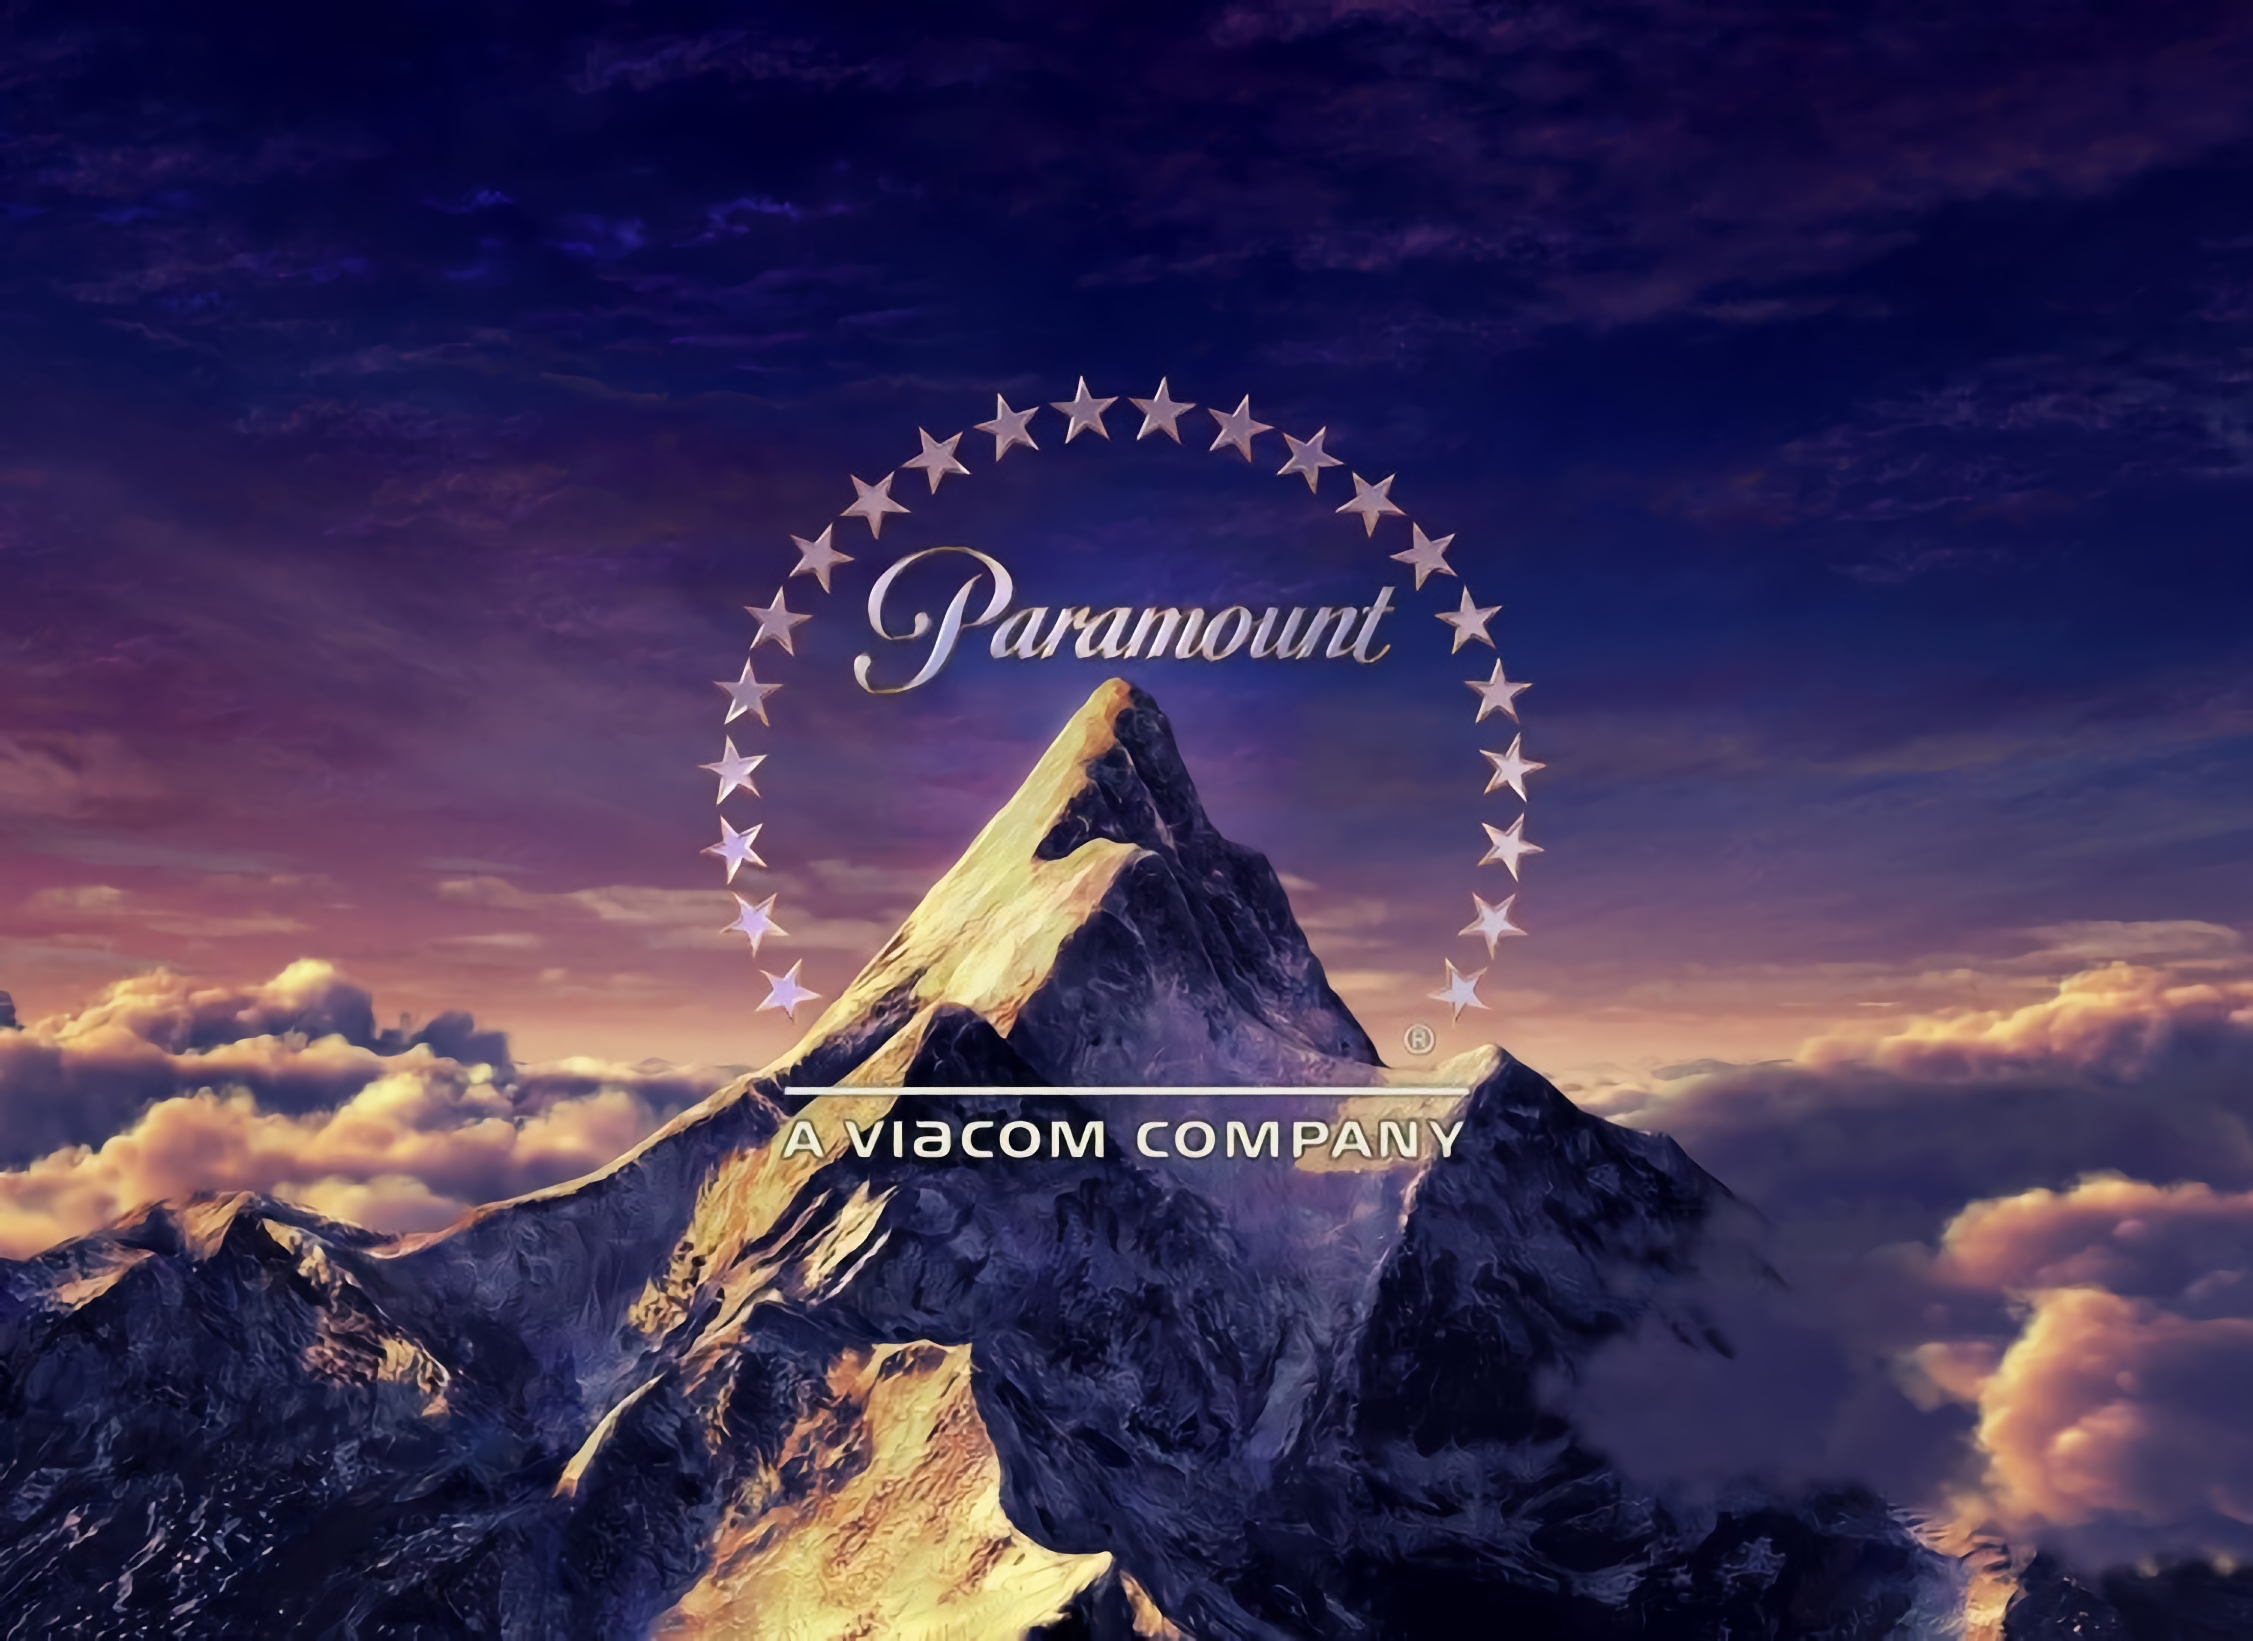 Estudio de cine Paramount deja de trabajar en Rusia